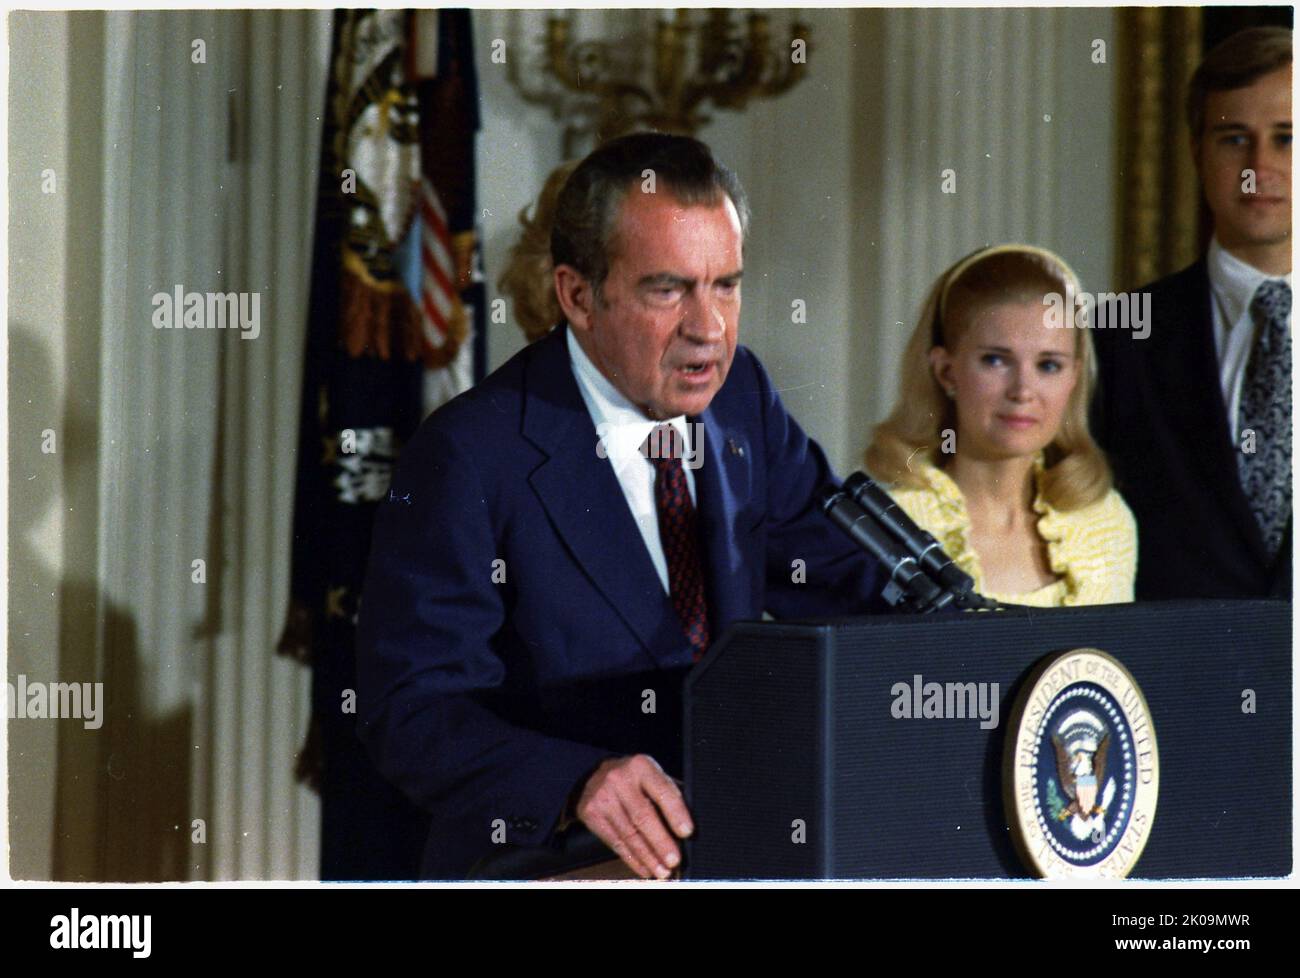 Richard Nixon (1913 - 1994), Präsident der Vereinigten Staaten, diente von 1969 bis 1974. Nixon, ein Mitglied der Republikanischen Partei, diente zuvor von 1953 bis 1961 als Vizepräsident von 36. und wurde nach dem Watergate-Skandal der einzige Präsident, der aus dem Amt zurücktrat. Stockfoto